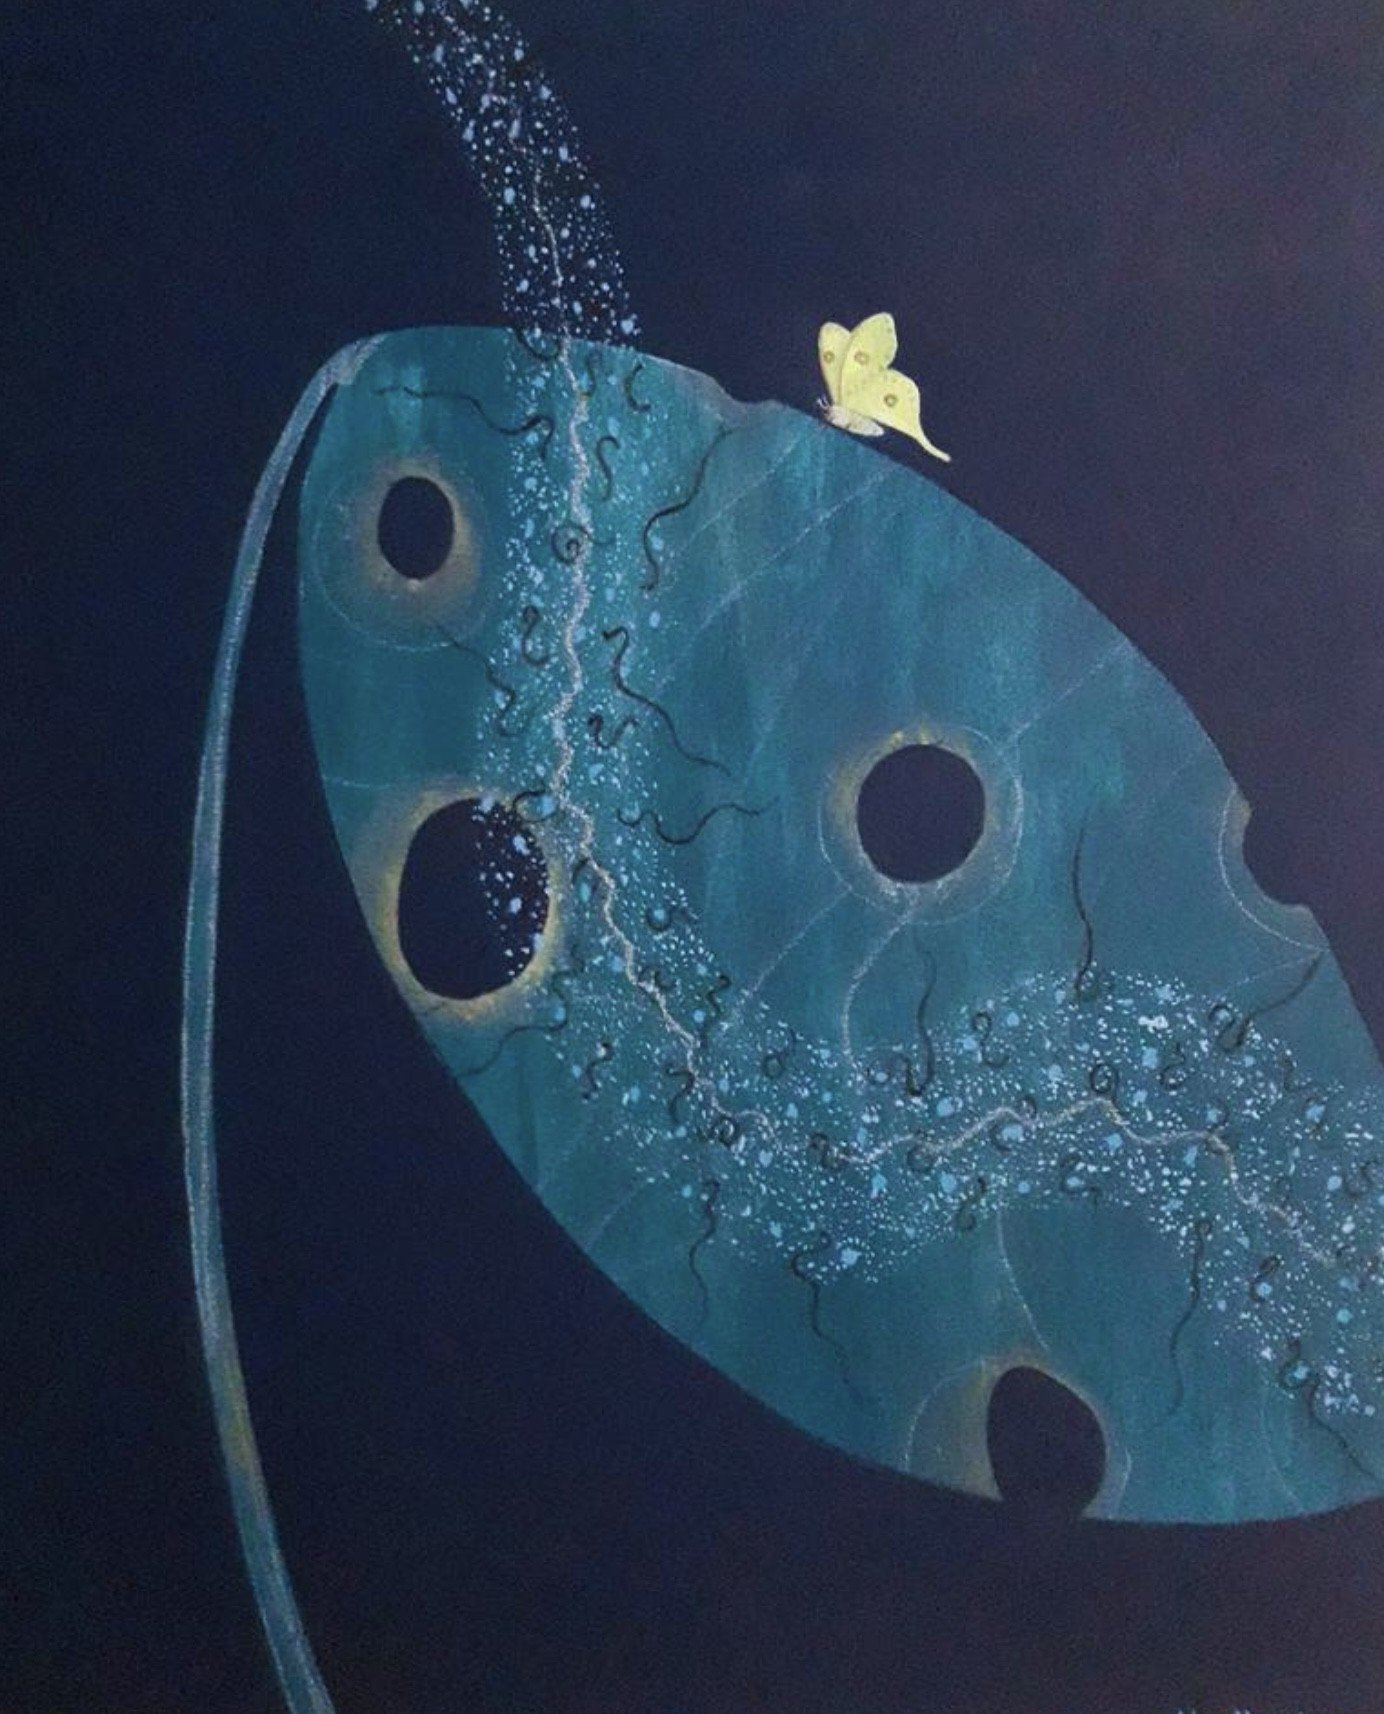 Luna Moth (2021) Oil paint on canvas. 50 x 60.6 cm